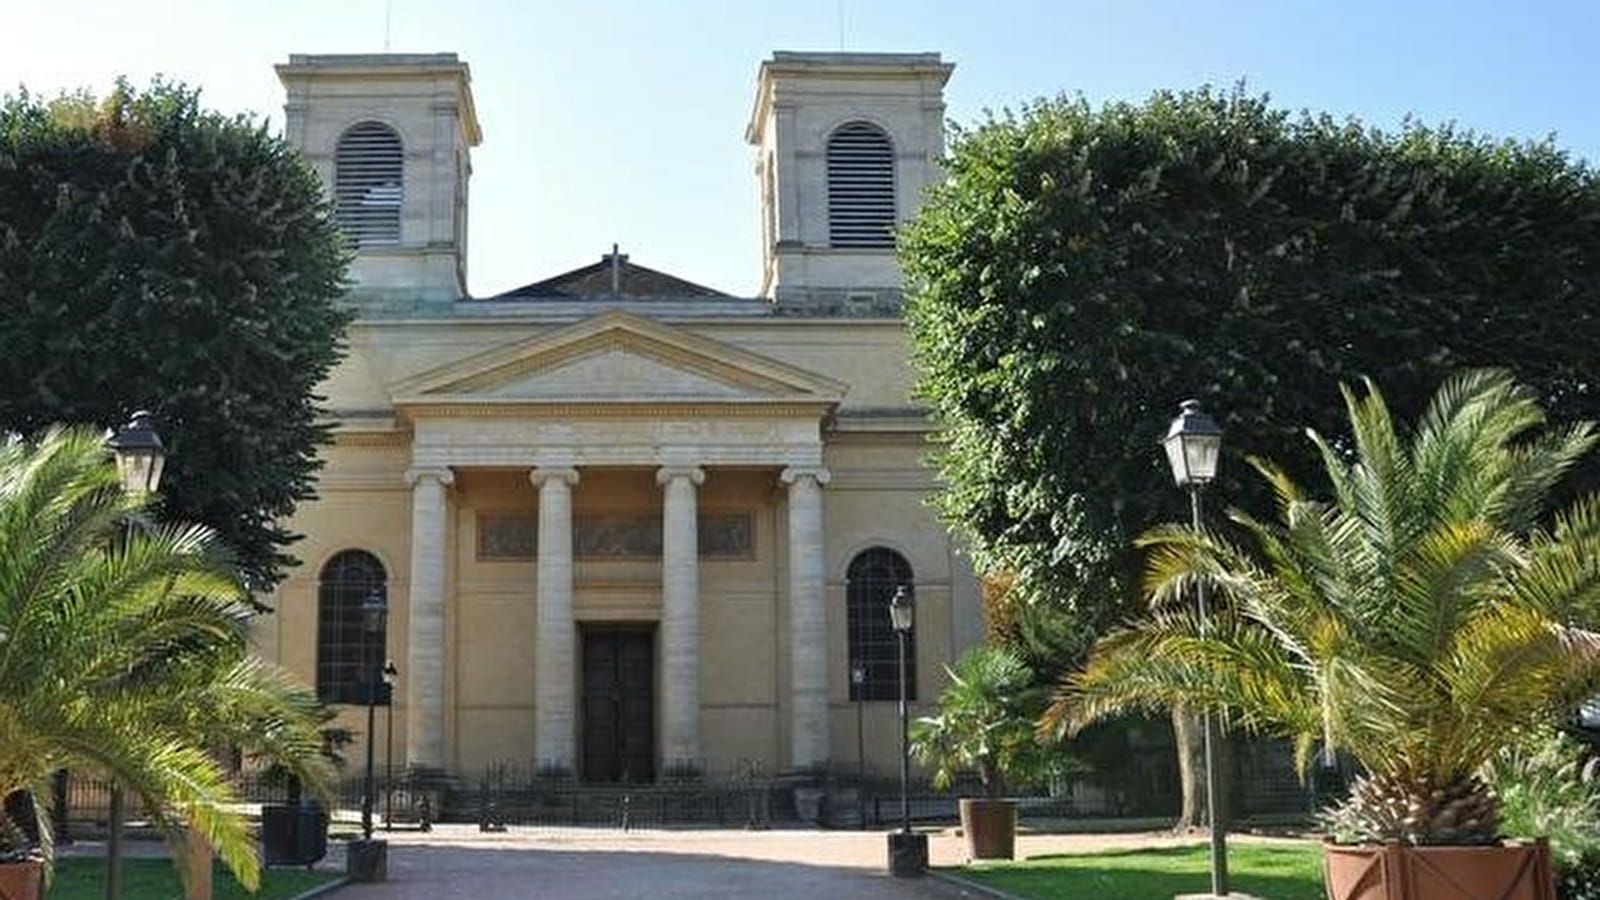 Cathédrale Saint-Vincent (nouvelle église Saint-Vincent)